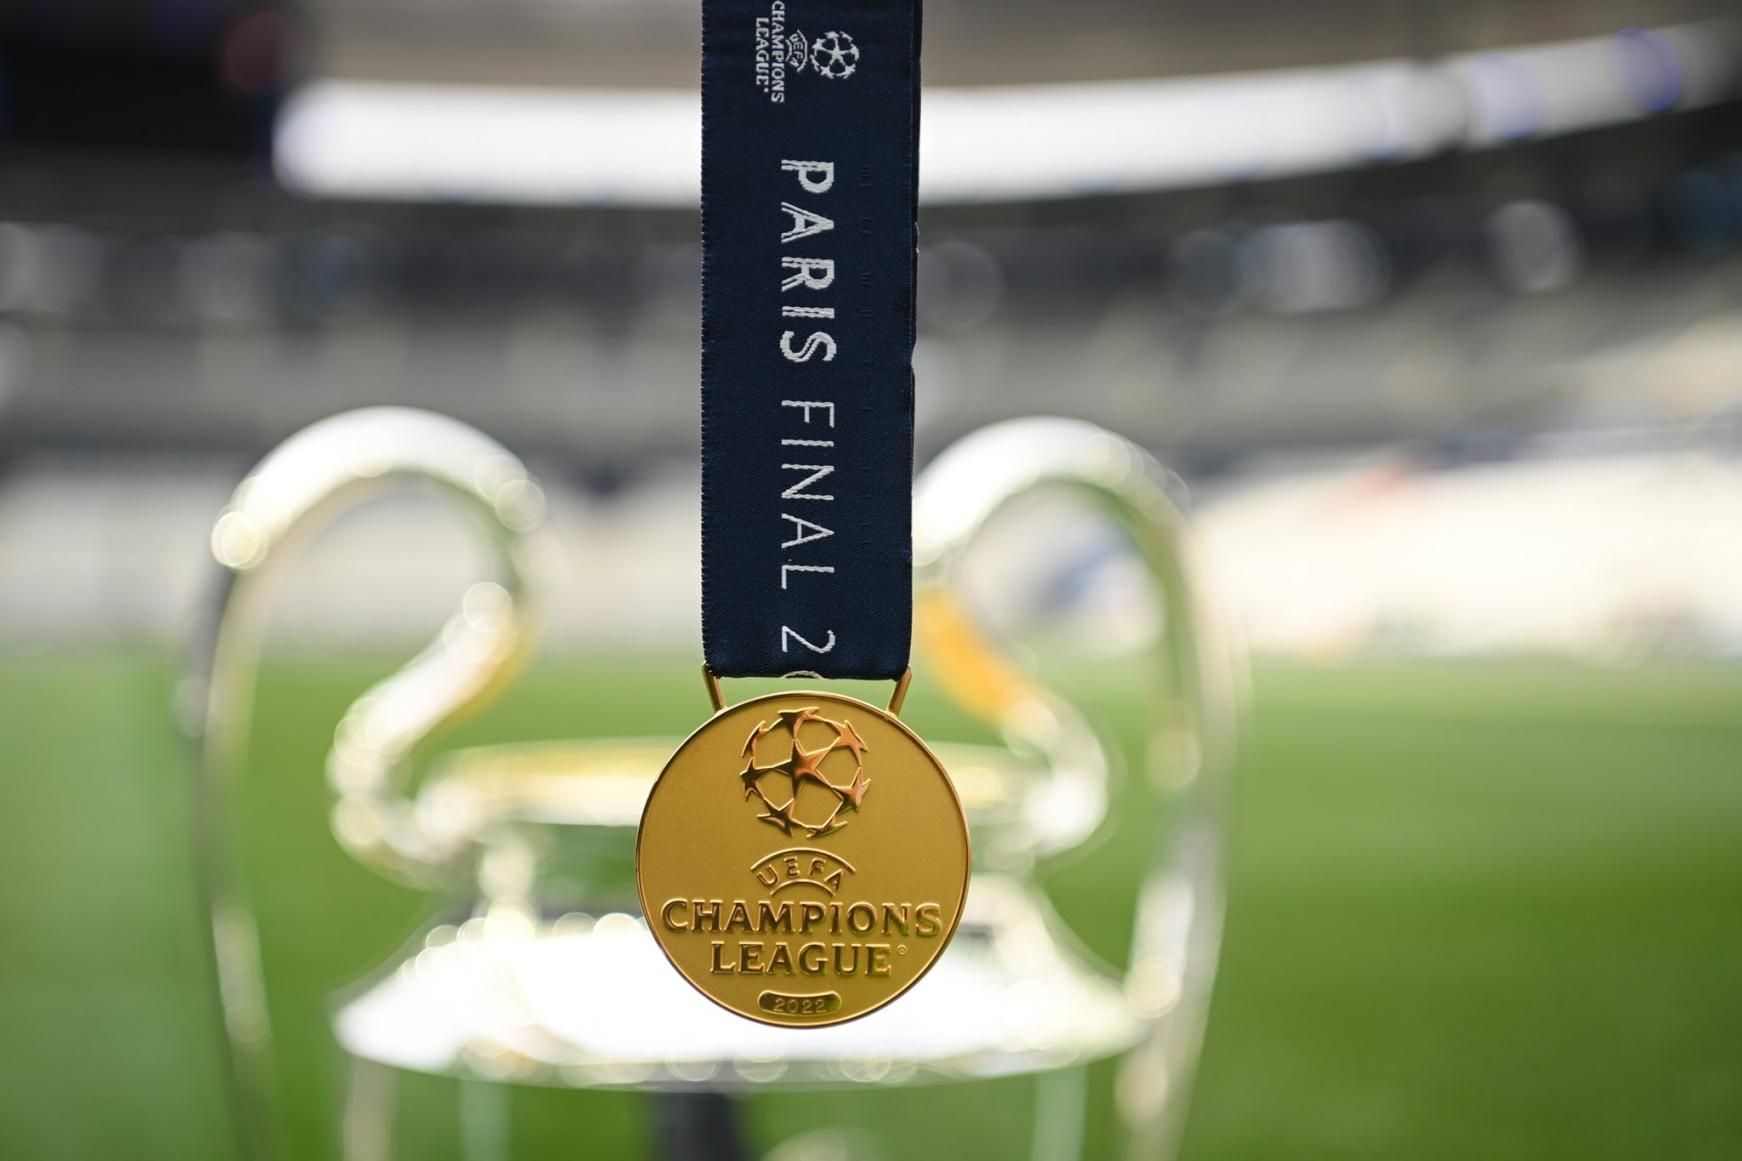 Real Madrid é o time que mais vezes chegou nas semifinais da Champions nos  últimos 10 anos 